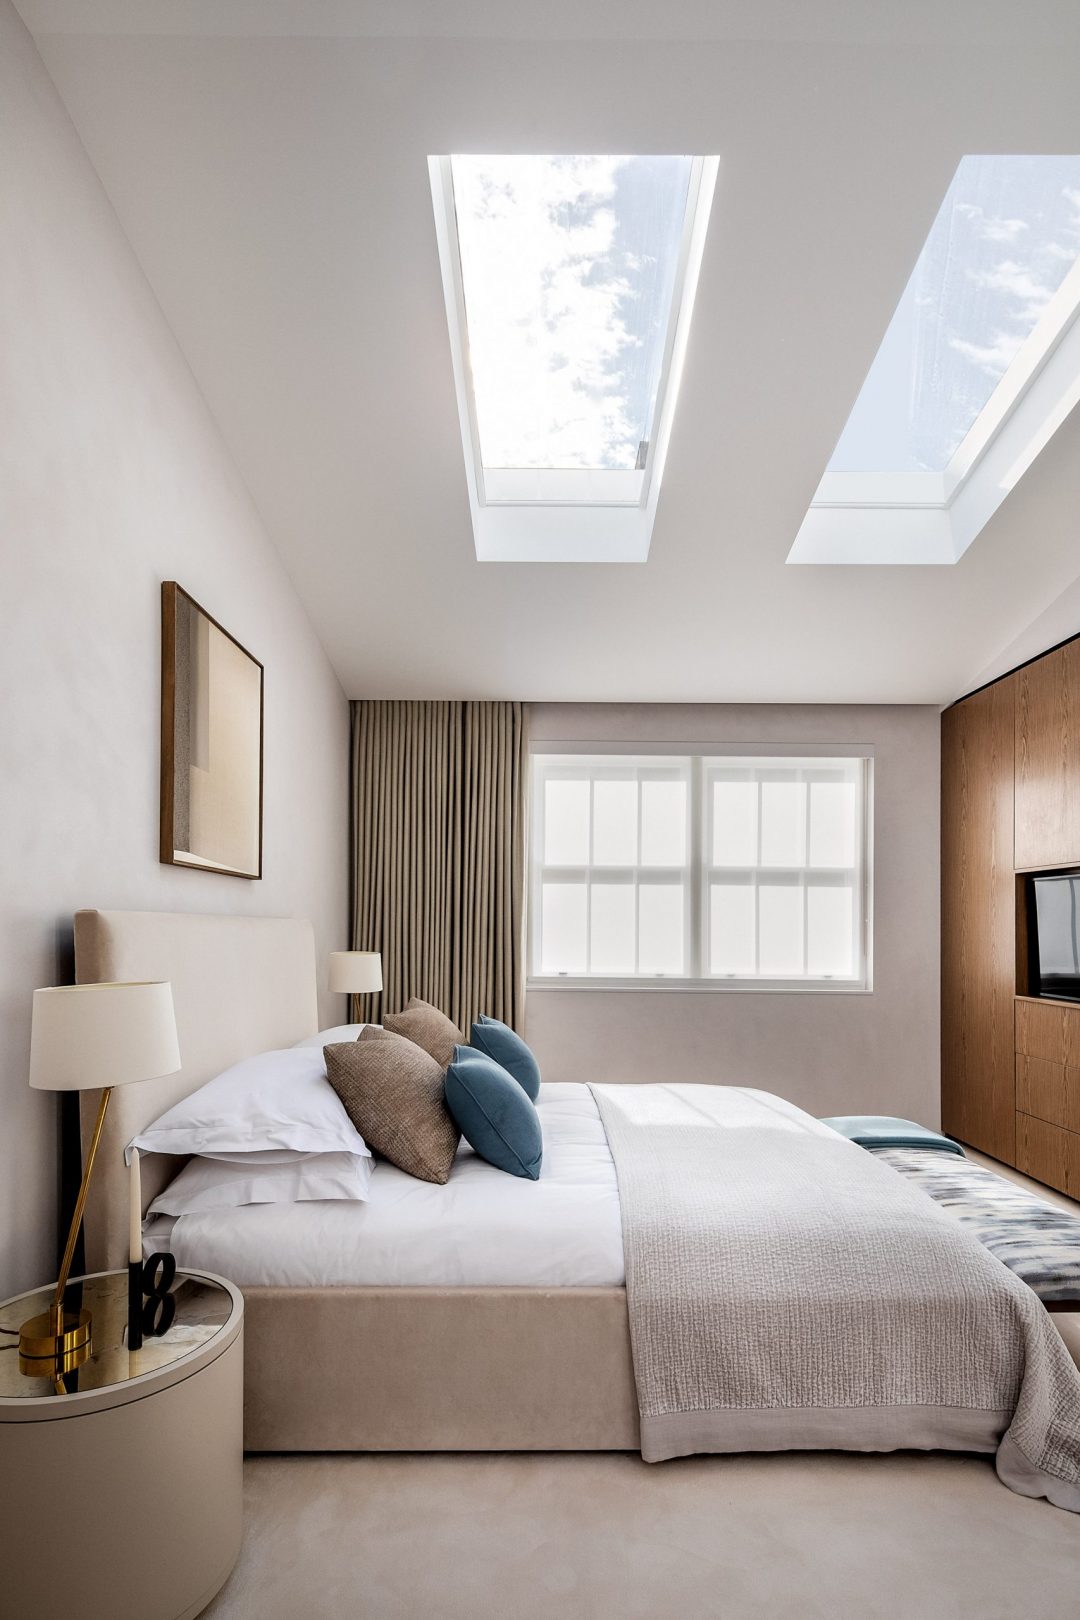 Phòng ngủ phong cách tối giản có cảm giác ấm cúng nhờ kết hợp các chất liệu vải khác nhau